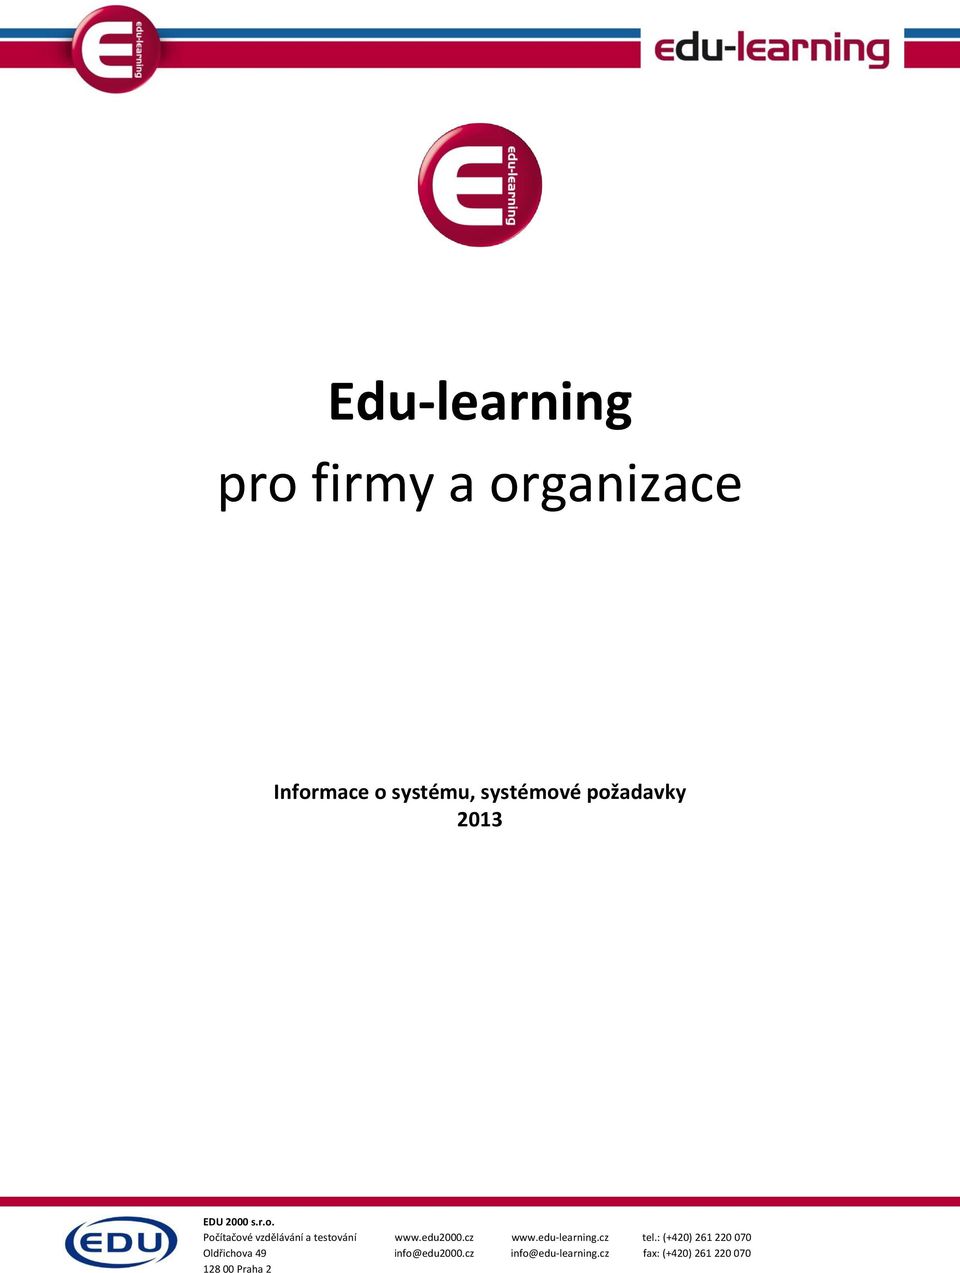 edu2000.cz info@edu2000.cz www.edu-learning.cz info@edu-learning.